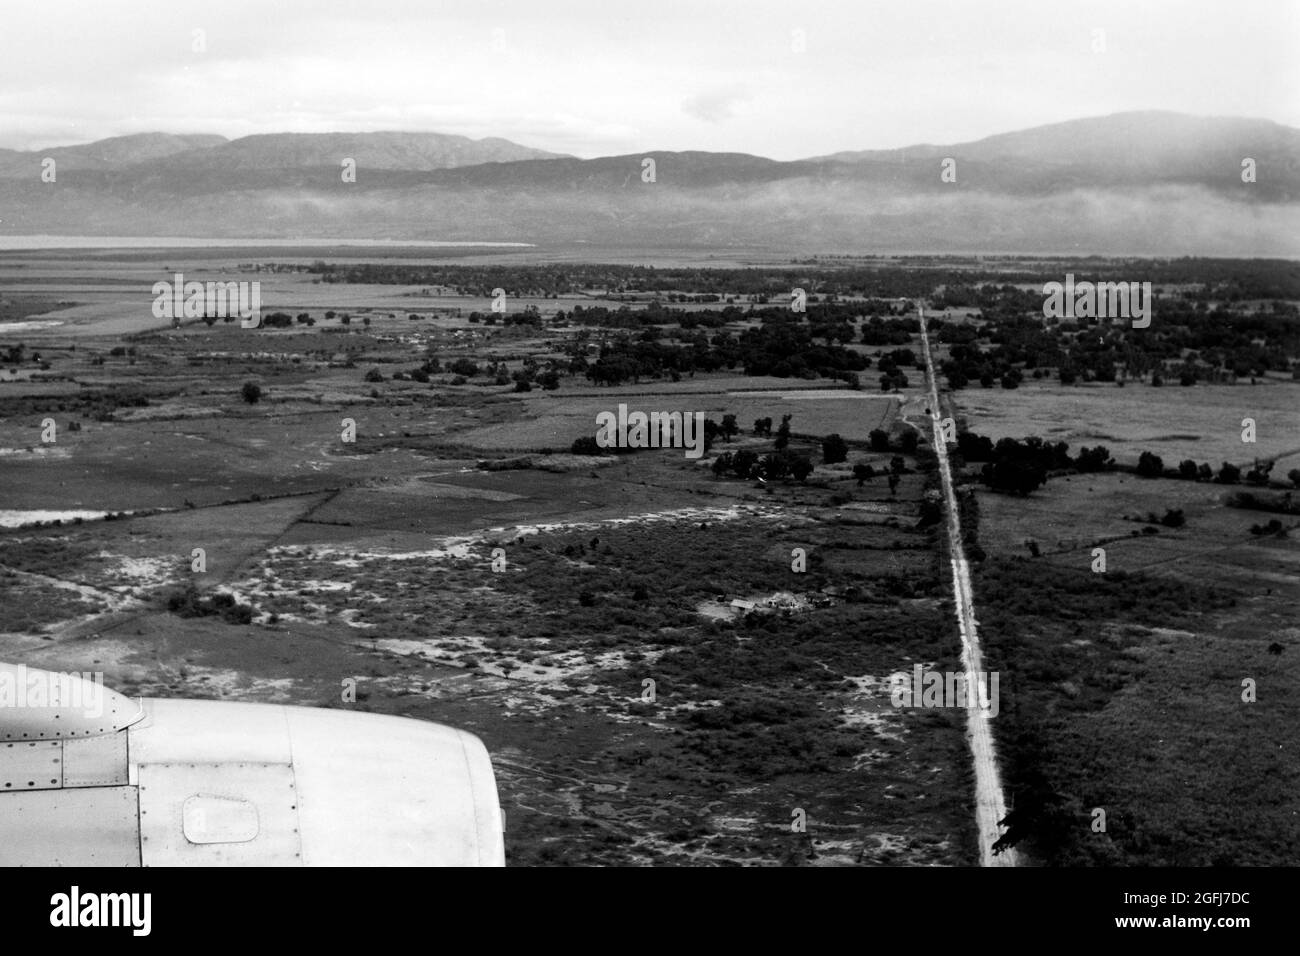 Im Landeanflug auf Port-au-Prince, Haiti, 1967. Avvicinandosi a Port-au Prince, Haiti, 1967. Foto Stock